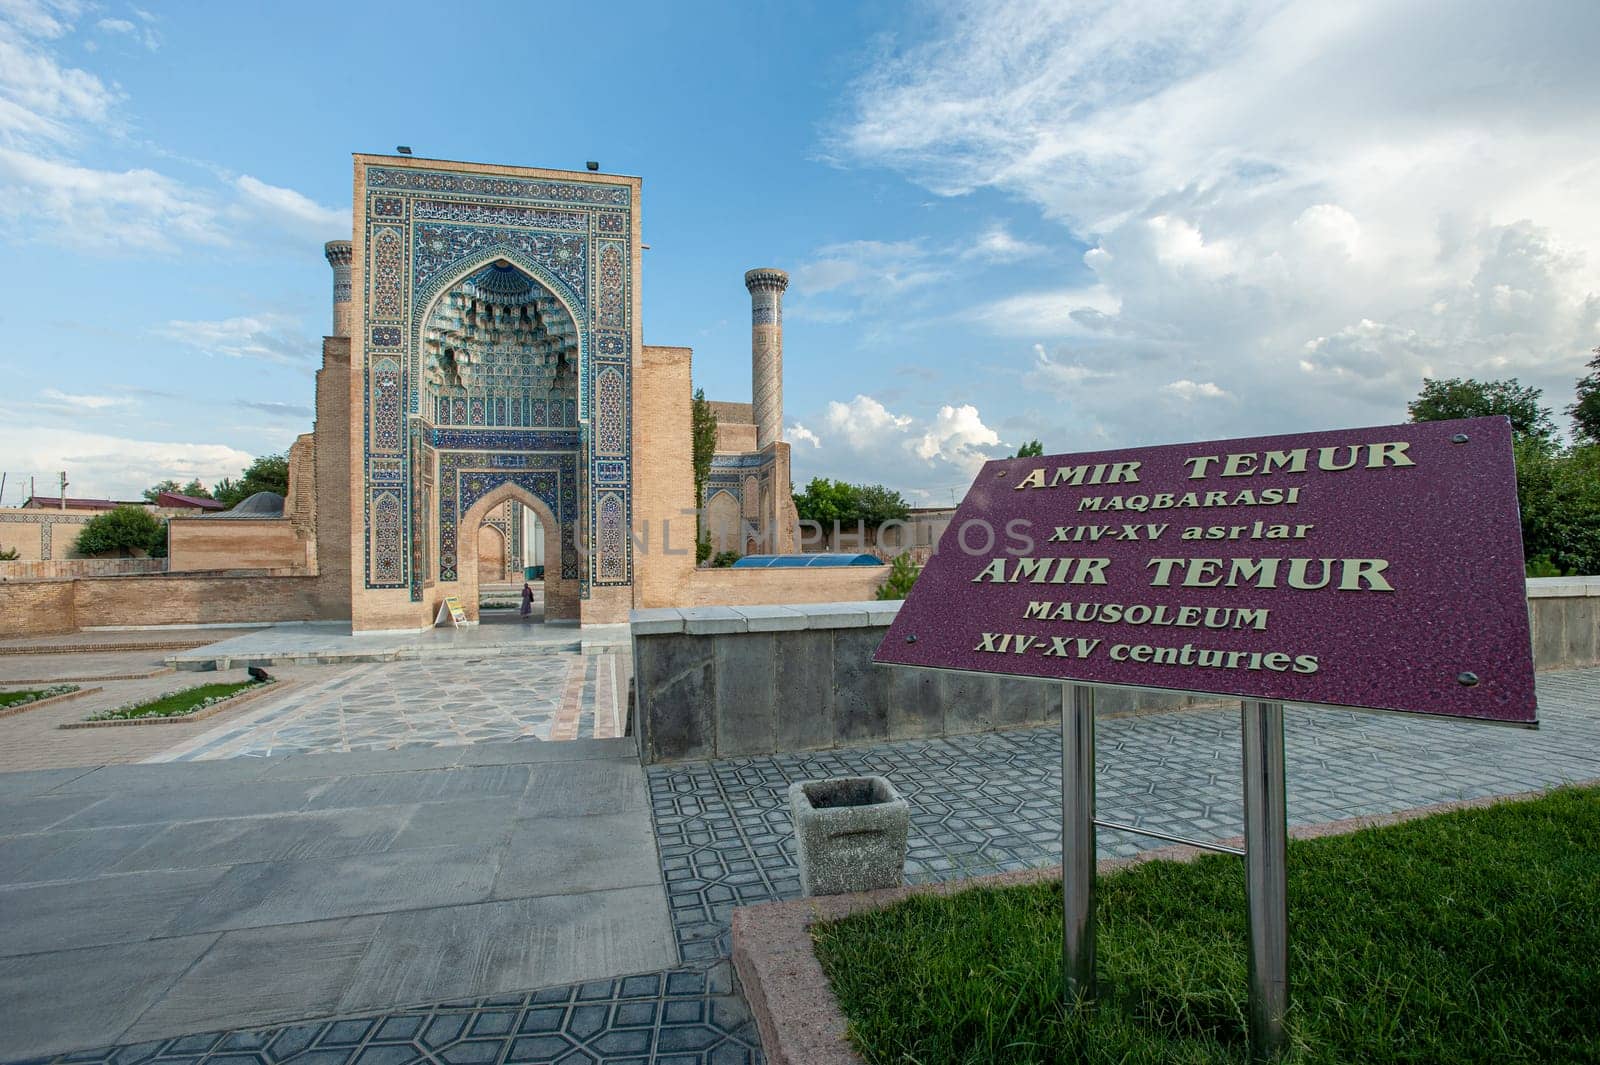 The mausoleum of Amir Timur in Samarkand, Uzbekistan